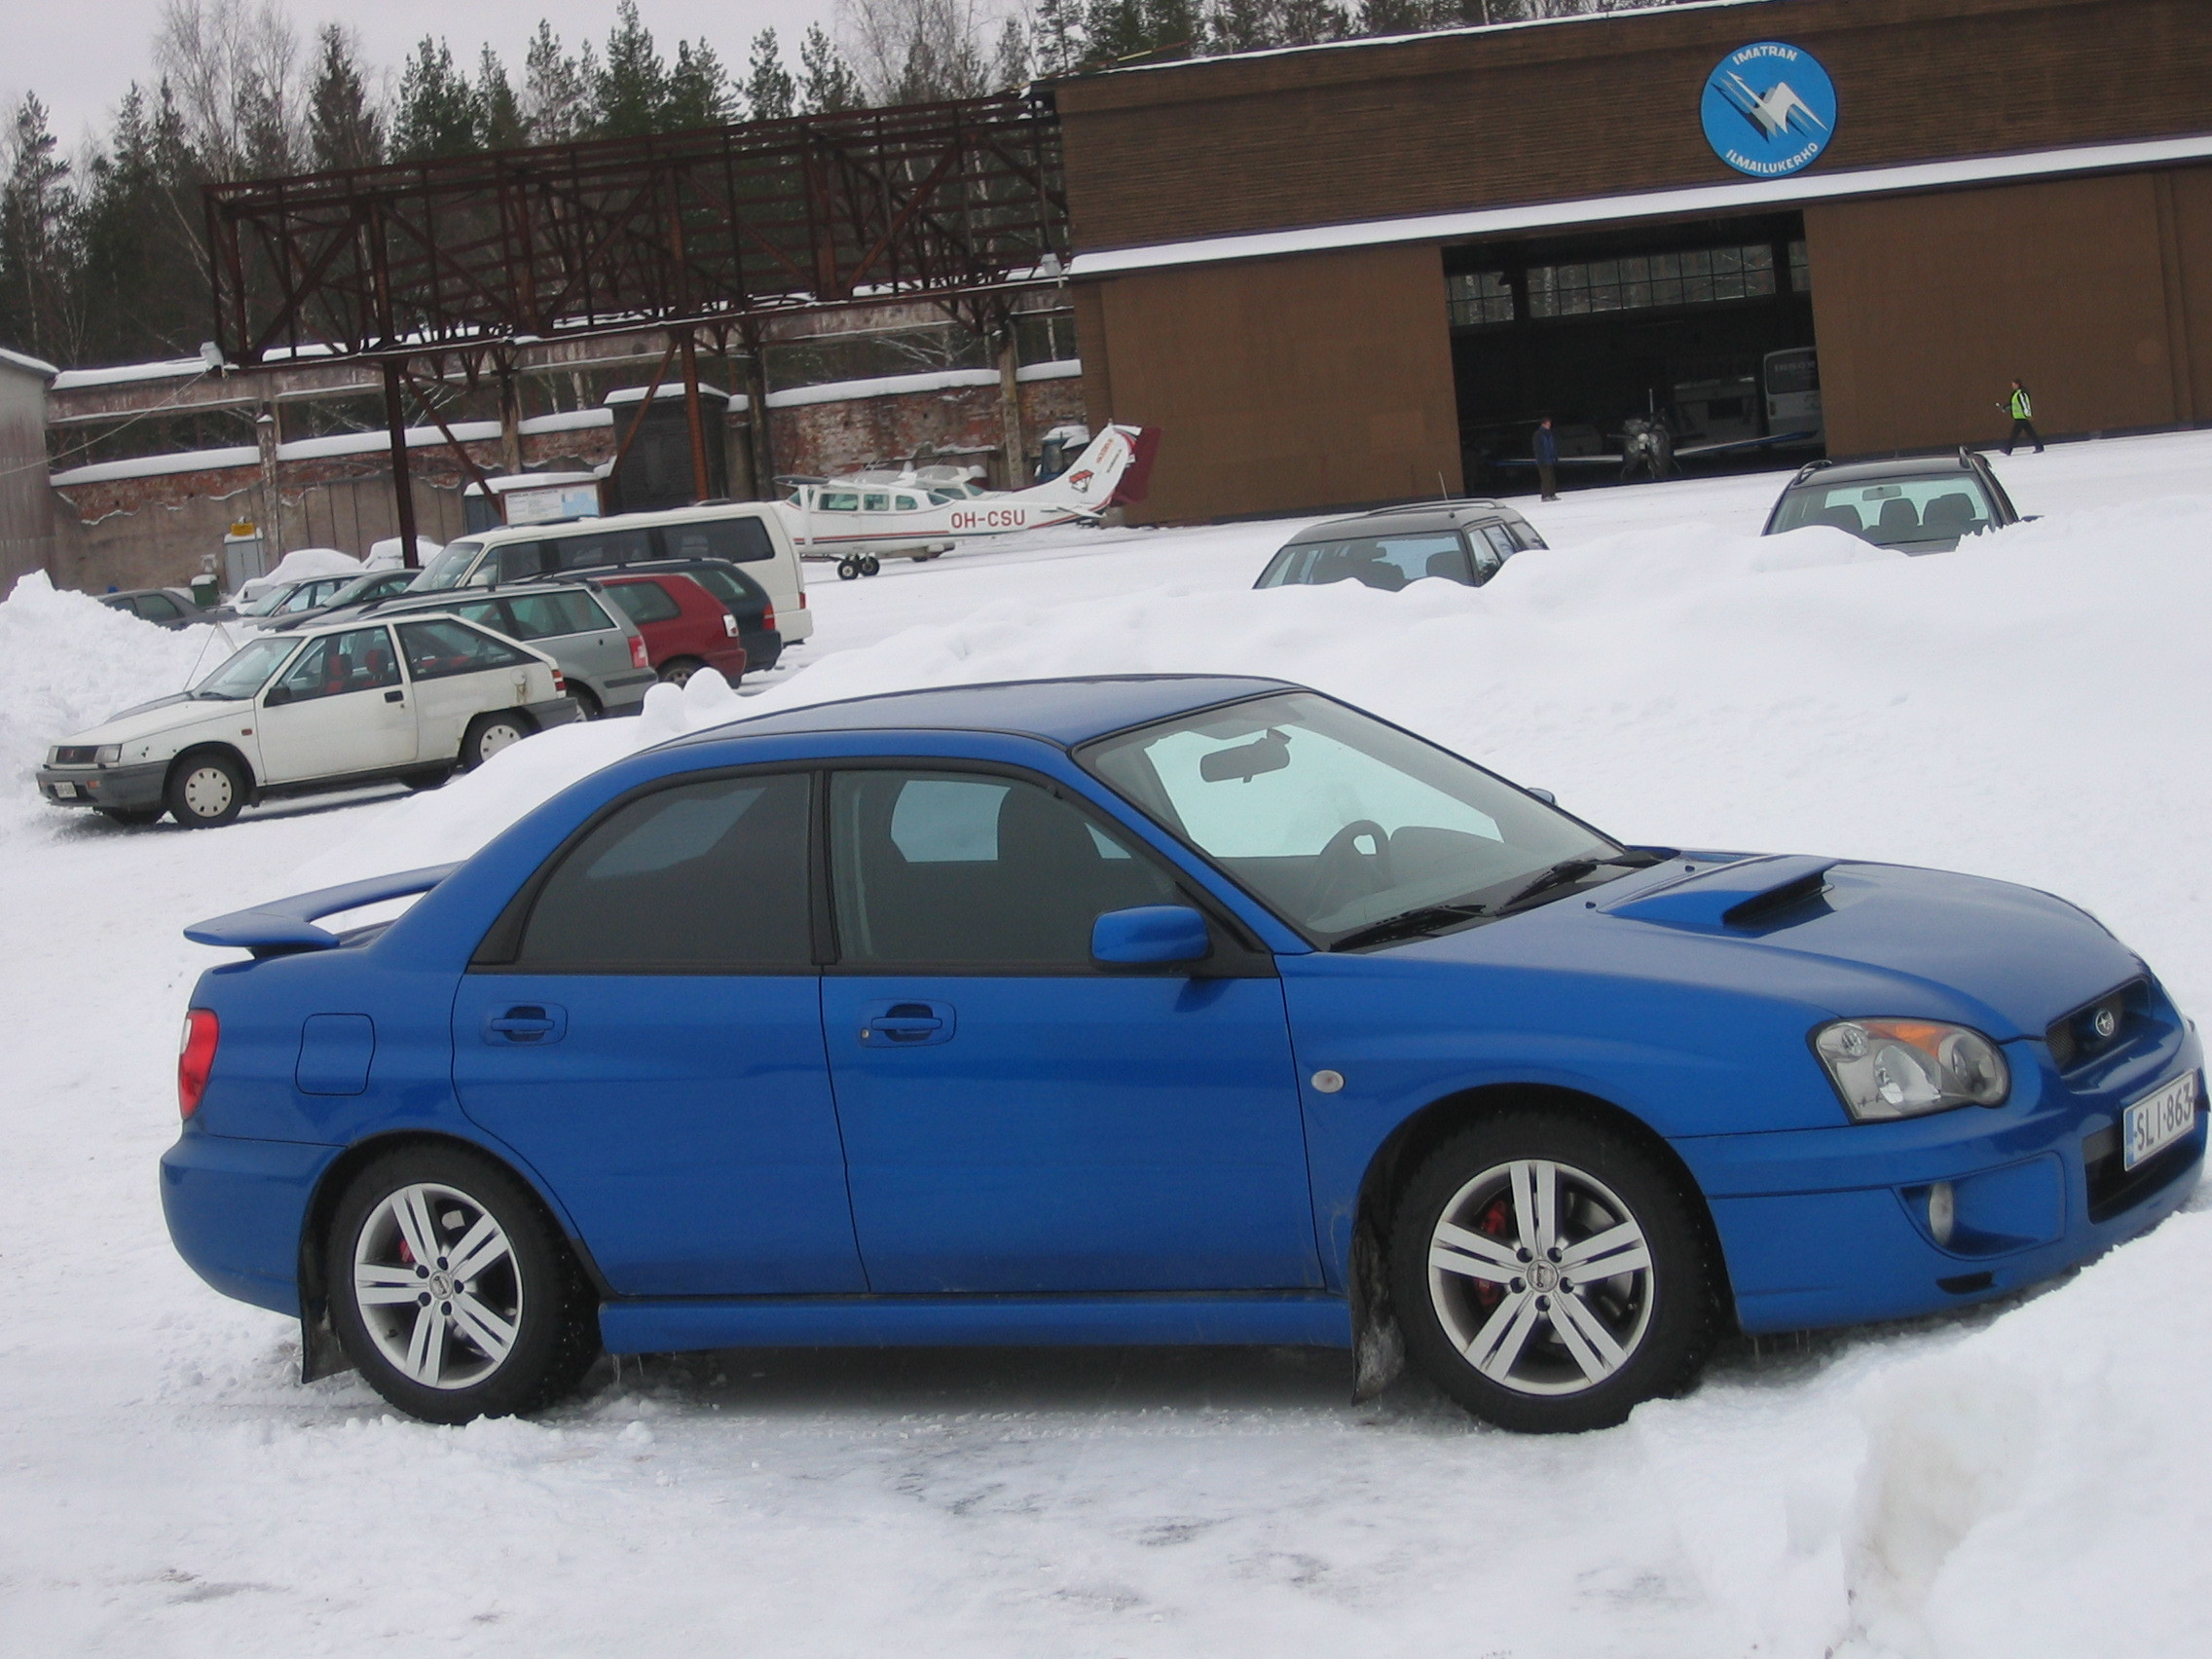 Radalle.com imatra 8.3.2008, Sininen Subaru Impreza